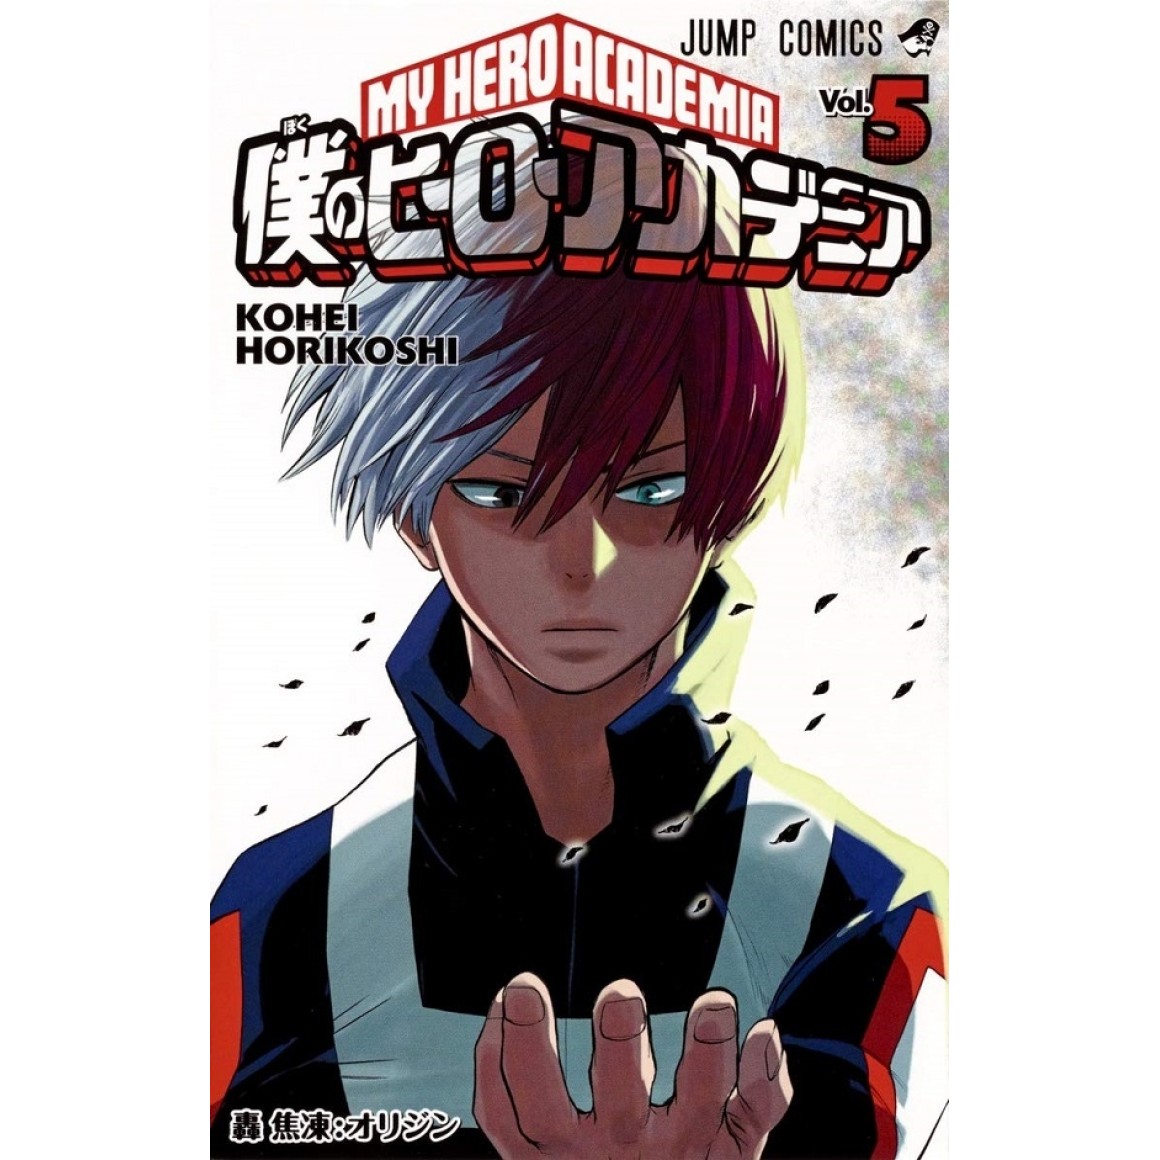 My Hero Academia - Boku no Hero - Vol. 34 - Kohei Horikoshi